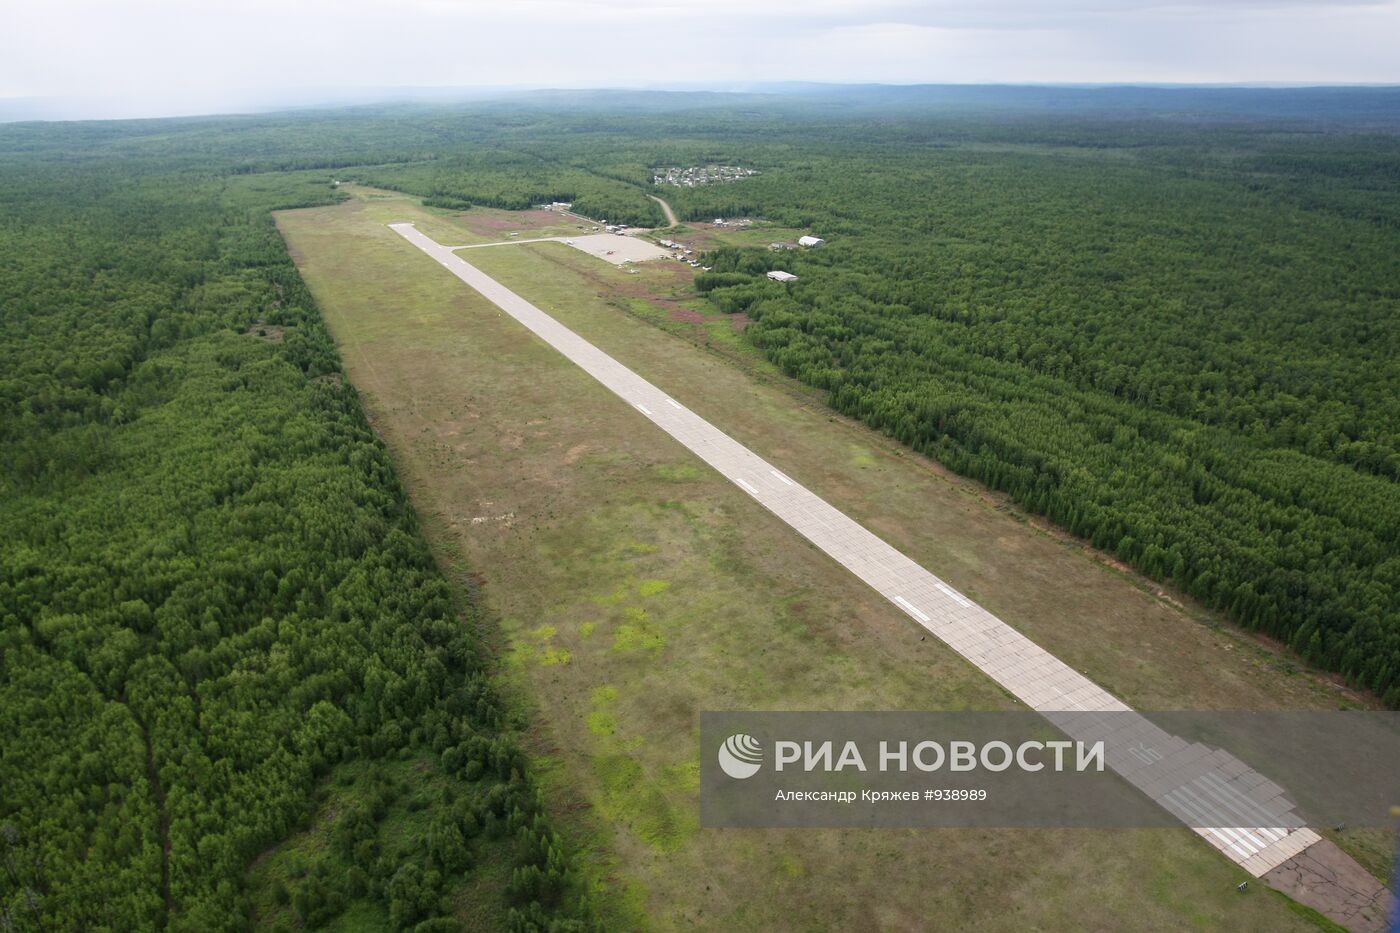 Вид на взлетно-посадочную полосу аэропорта города Кодинска